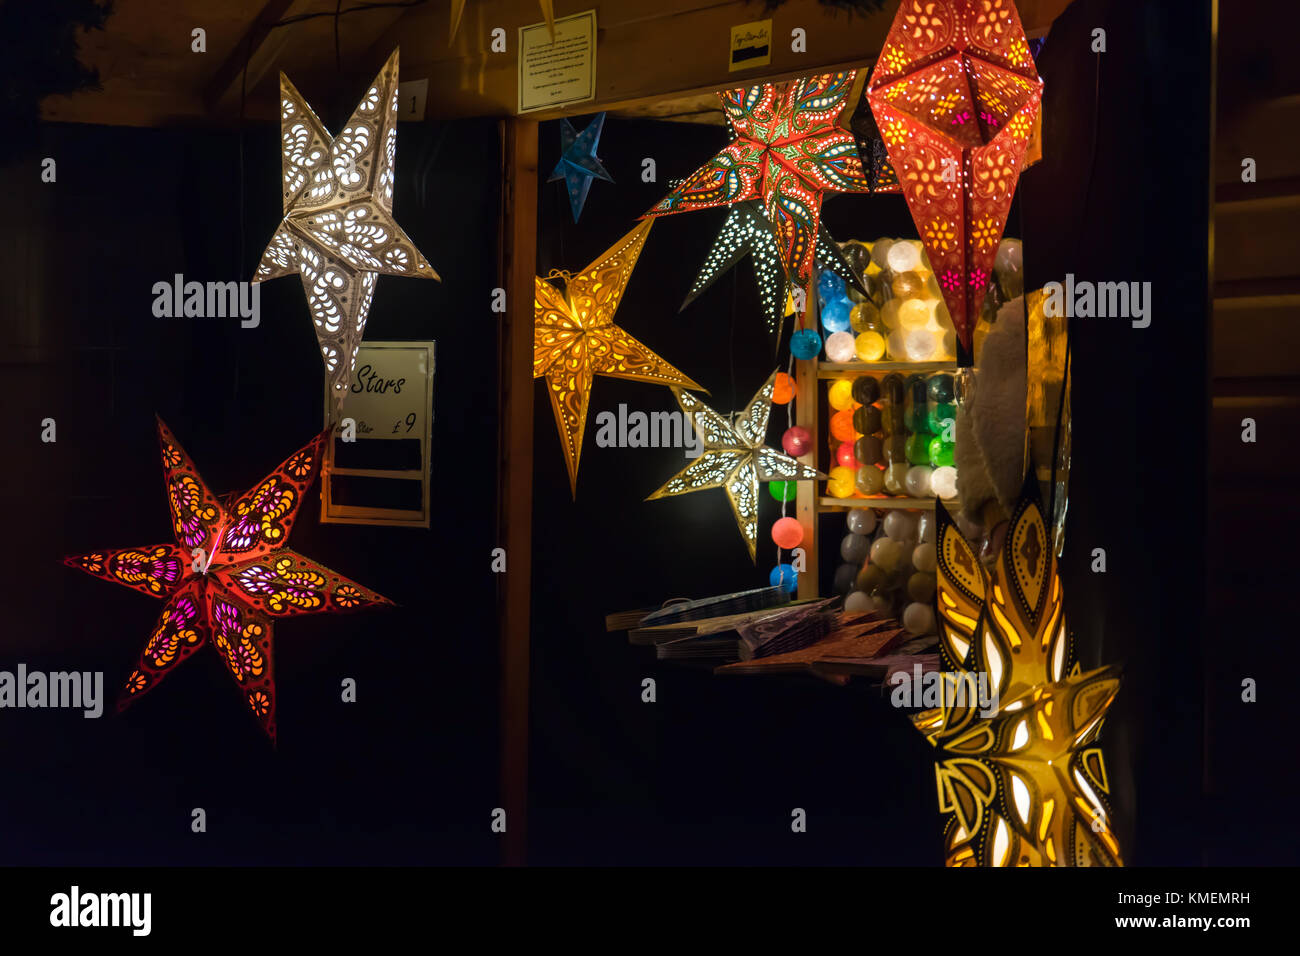 Lanternes colorées star lumineux à la Winchester Marché de Noël, Winchester, England UK Banque D'Images